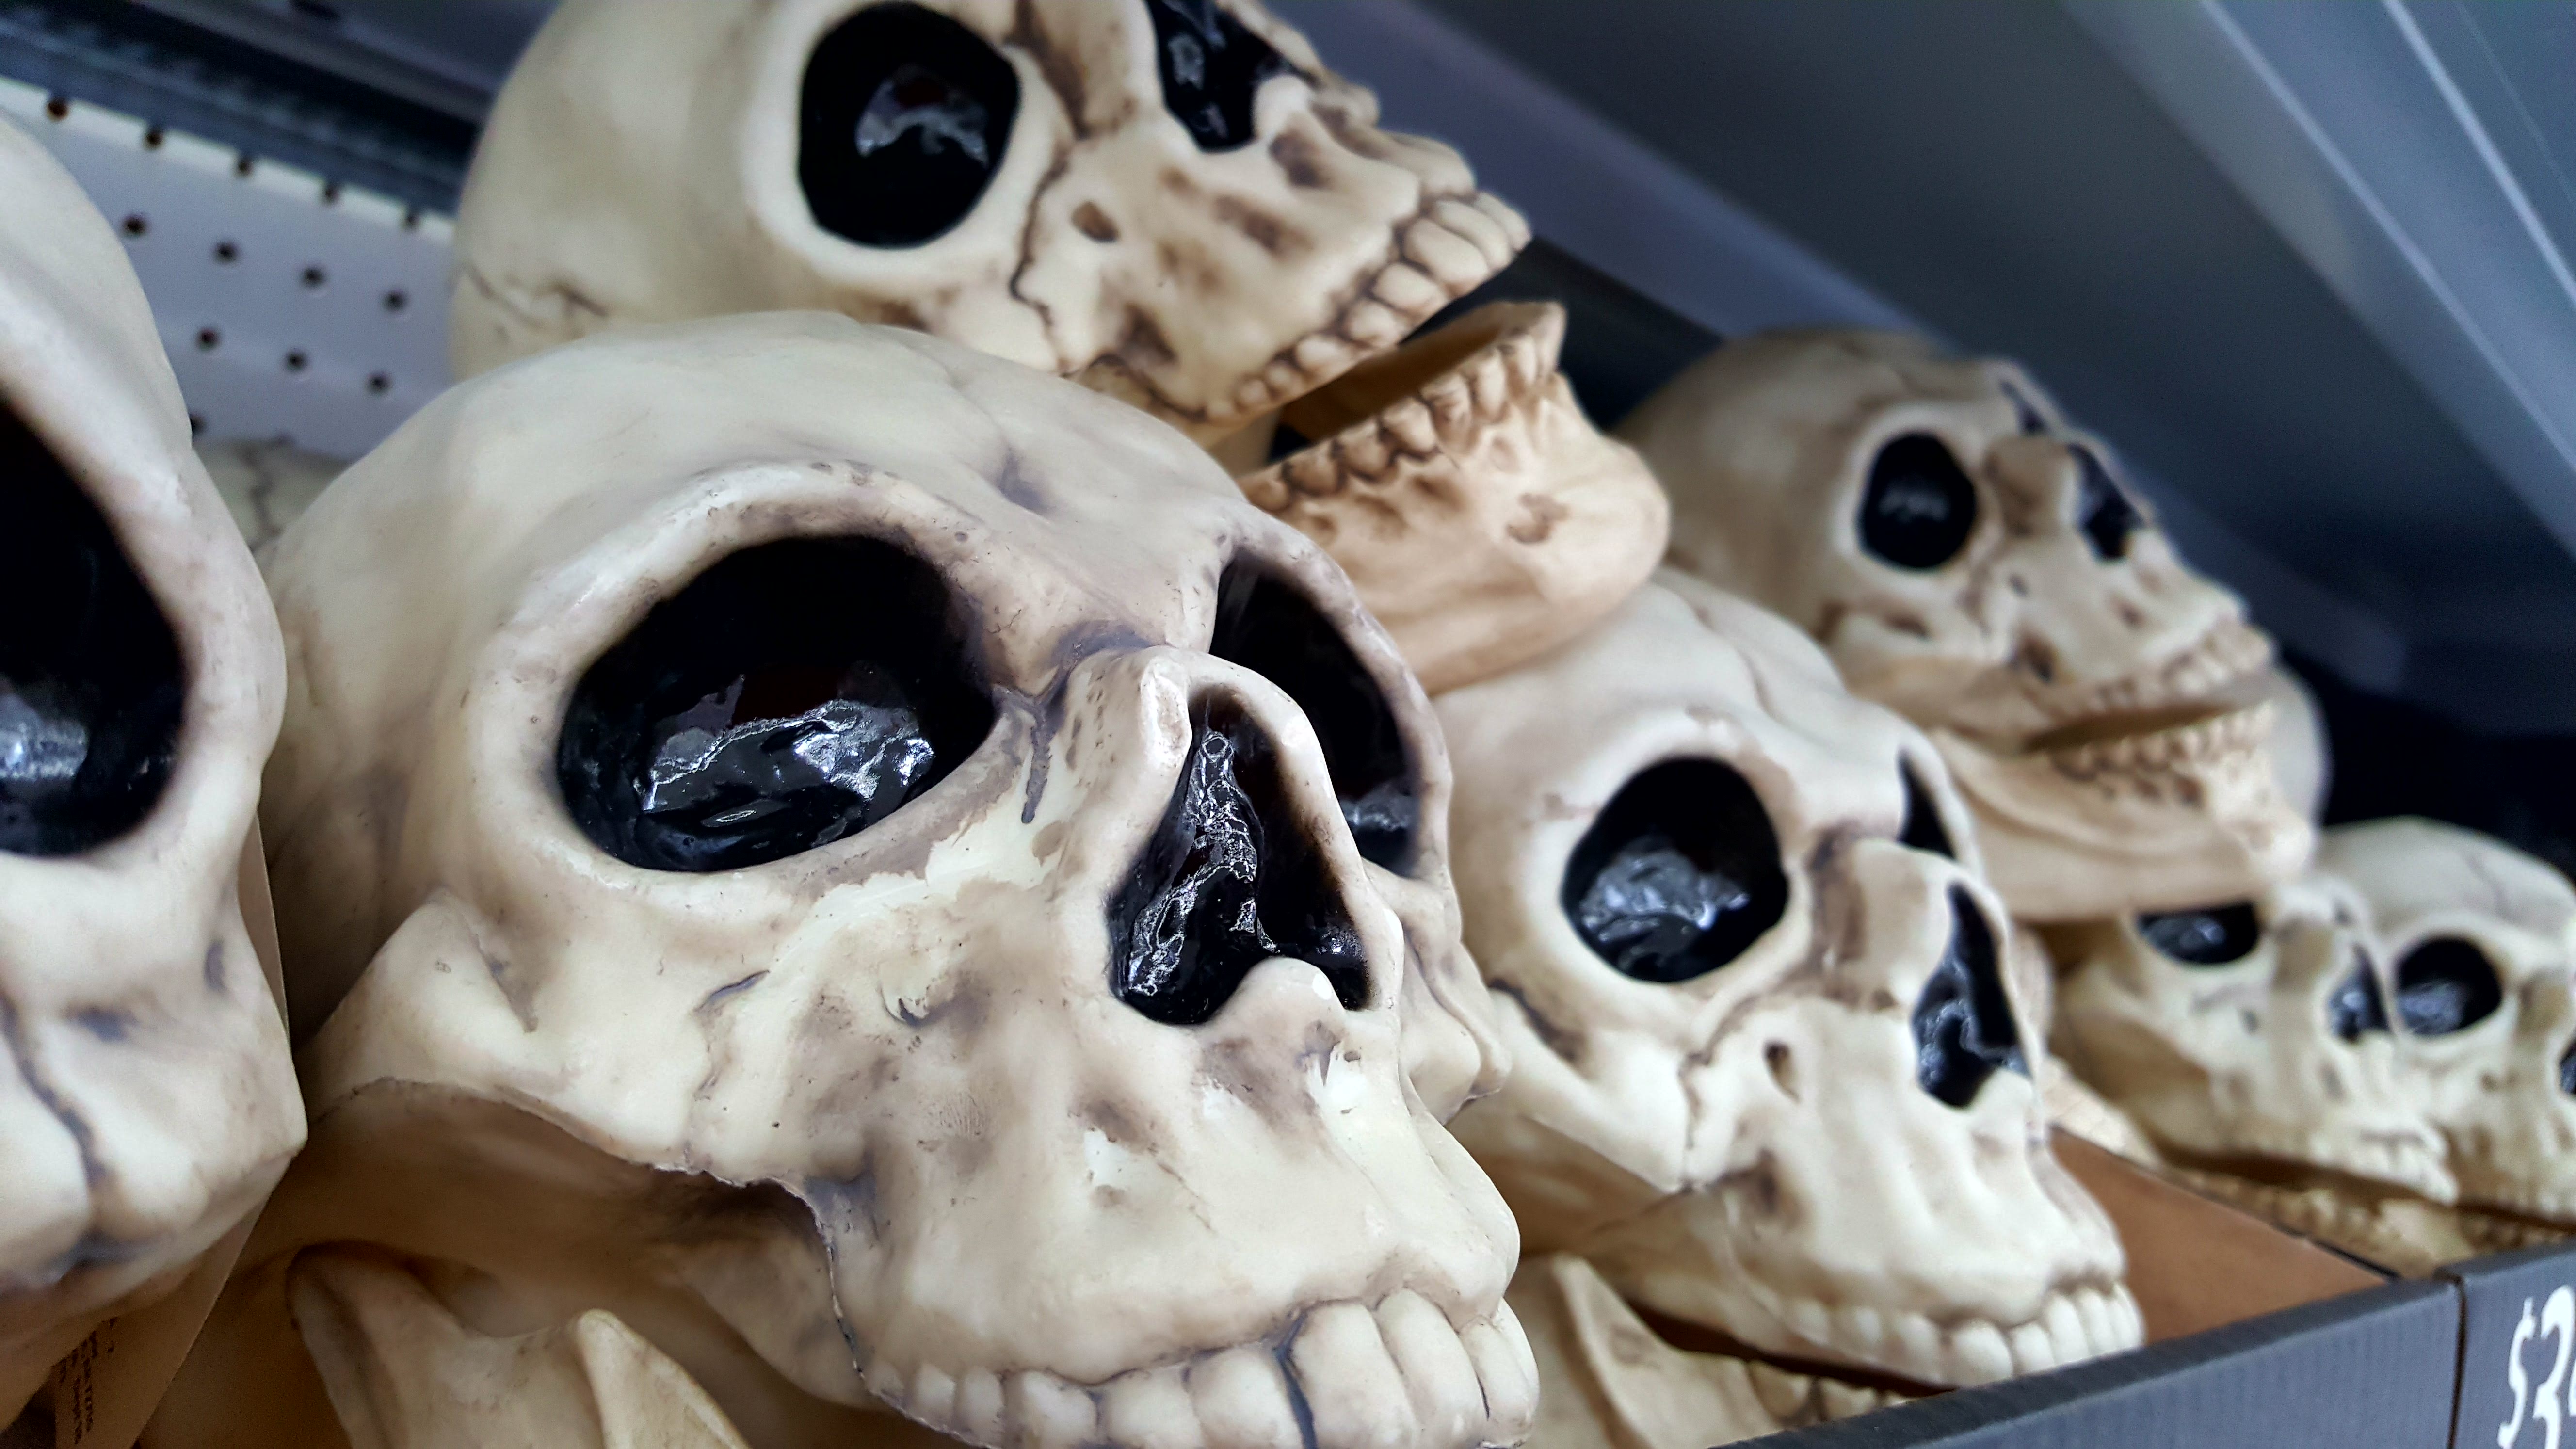 Skulls for Halloween decor